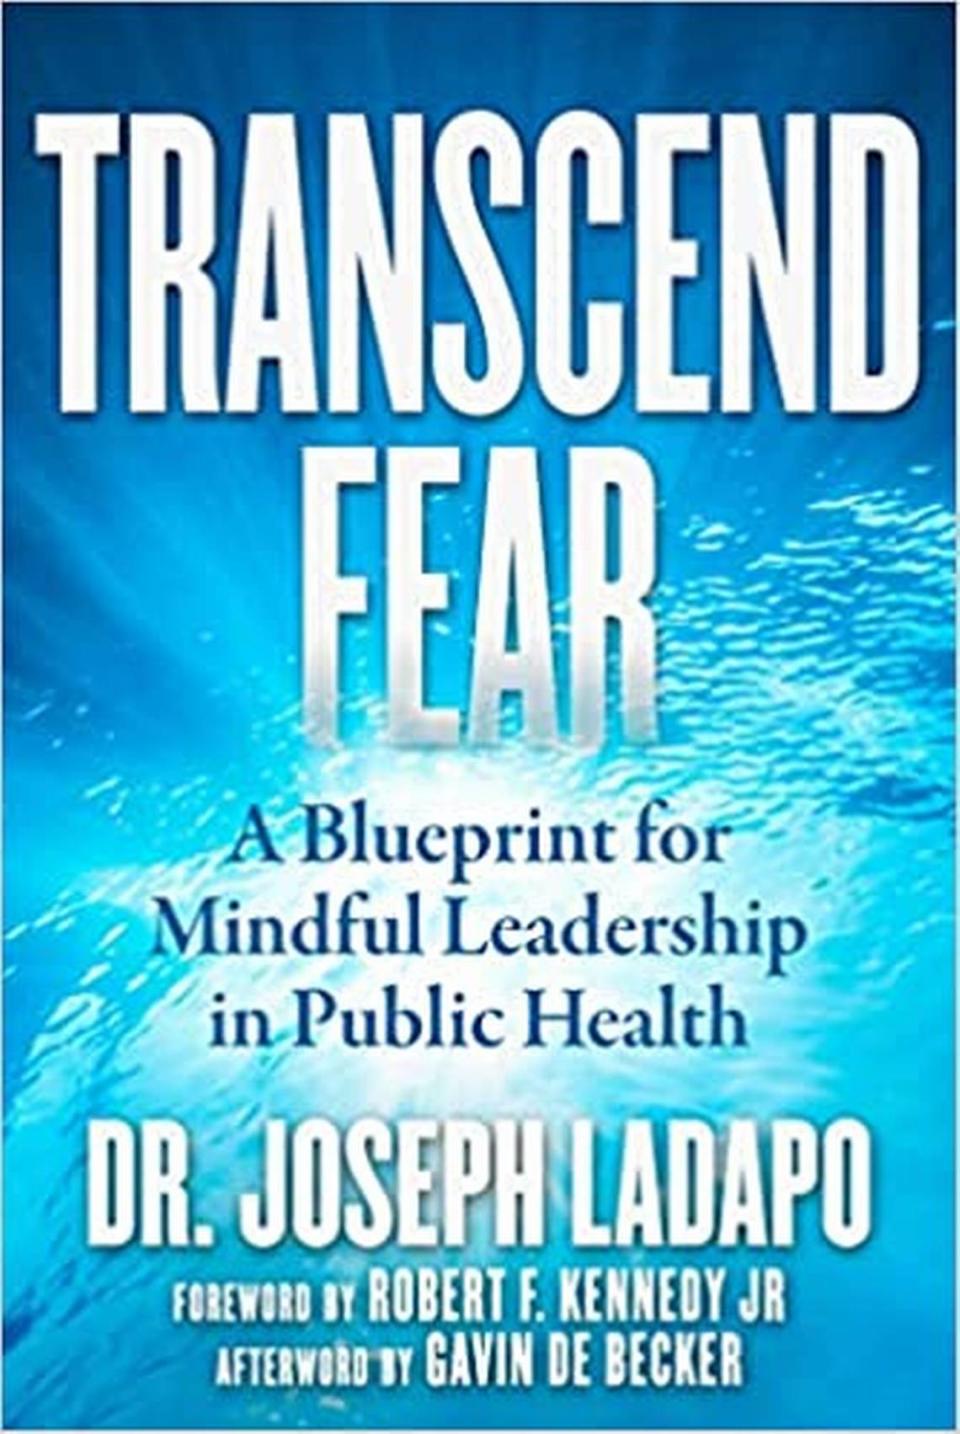 La autobiografía del Dr. Joseph Ladapo, secretario de Salubridad de la Florida.